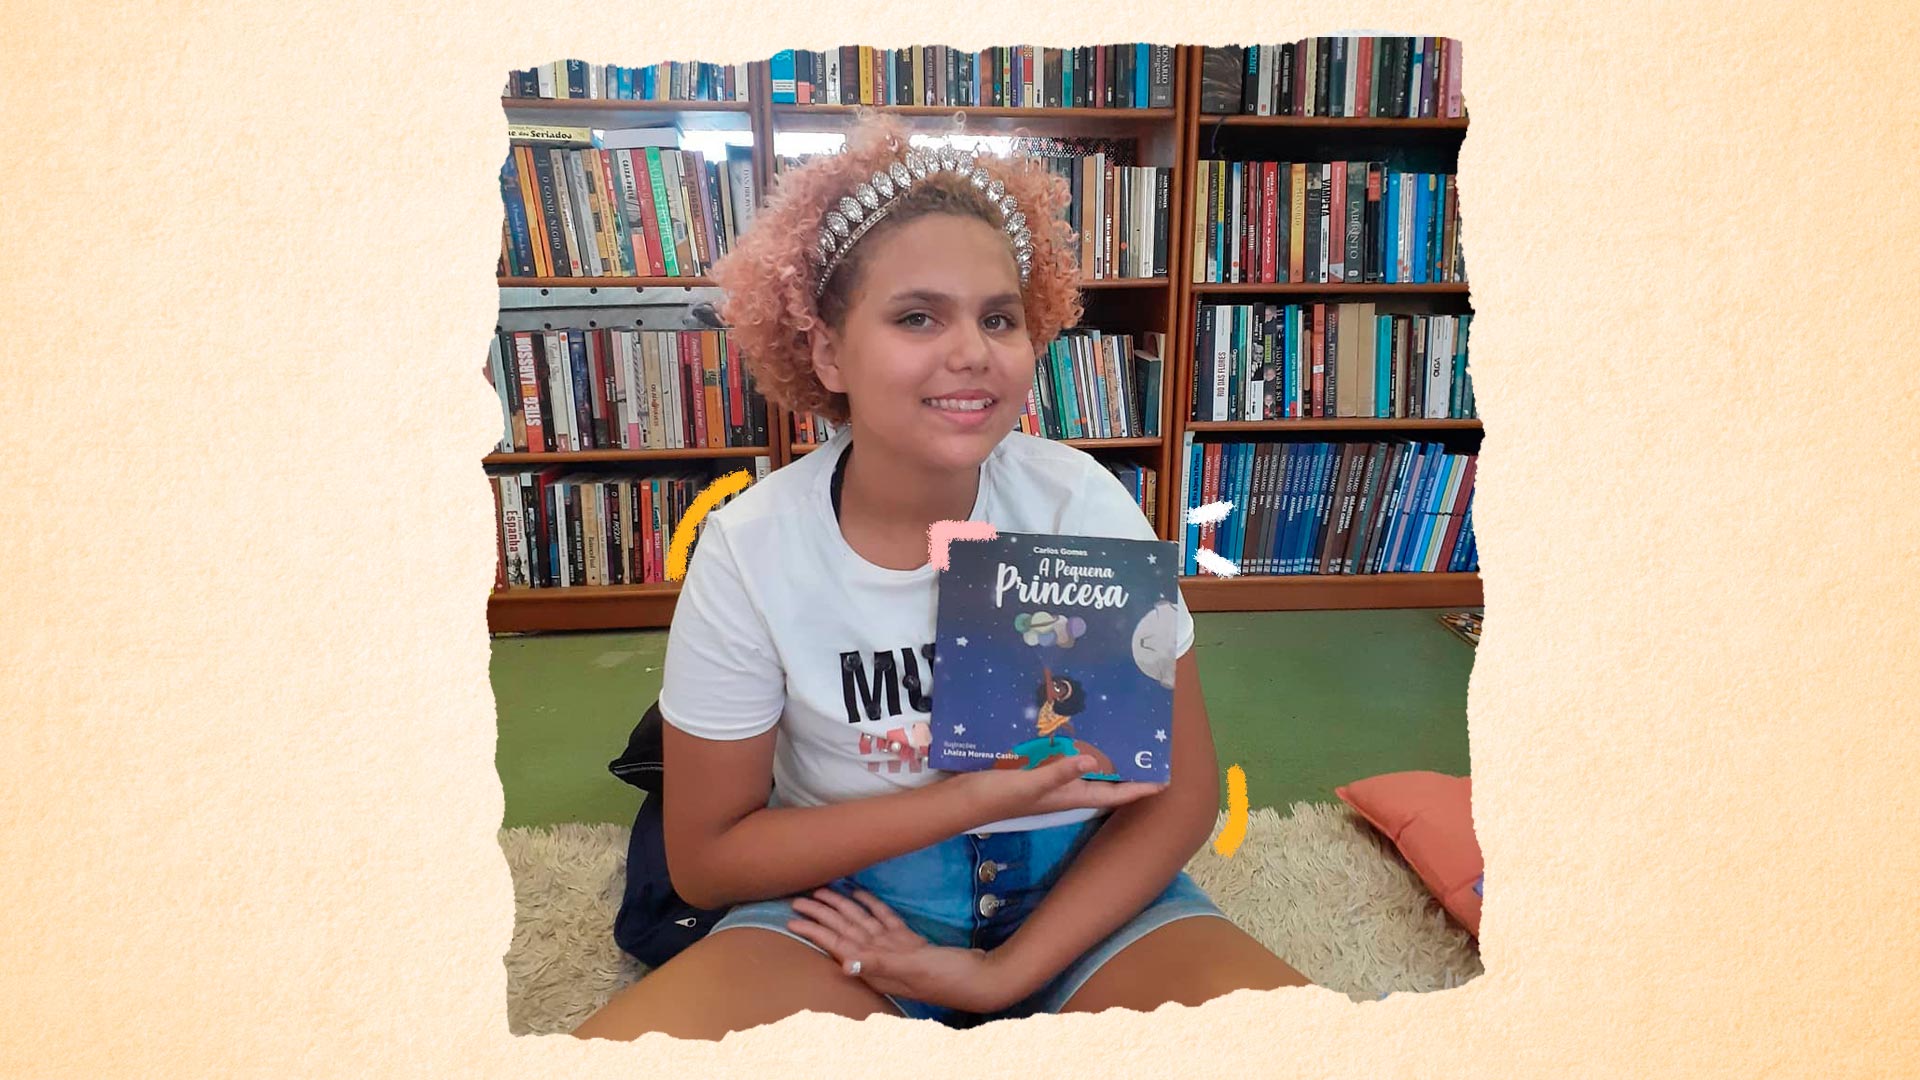 Imagem de Lua Oliveira sentada no chão da biblioteca segurando o livro "A pequena princesa", dedicado a ela.